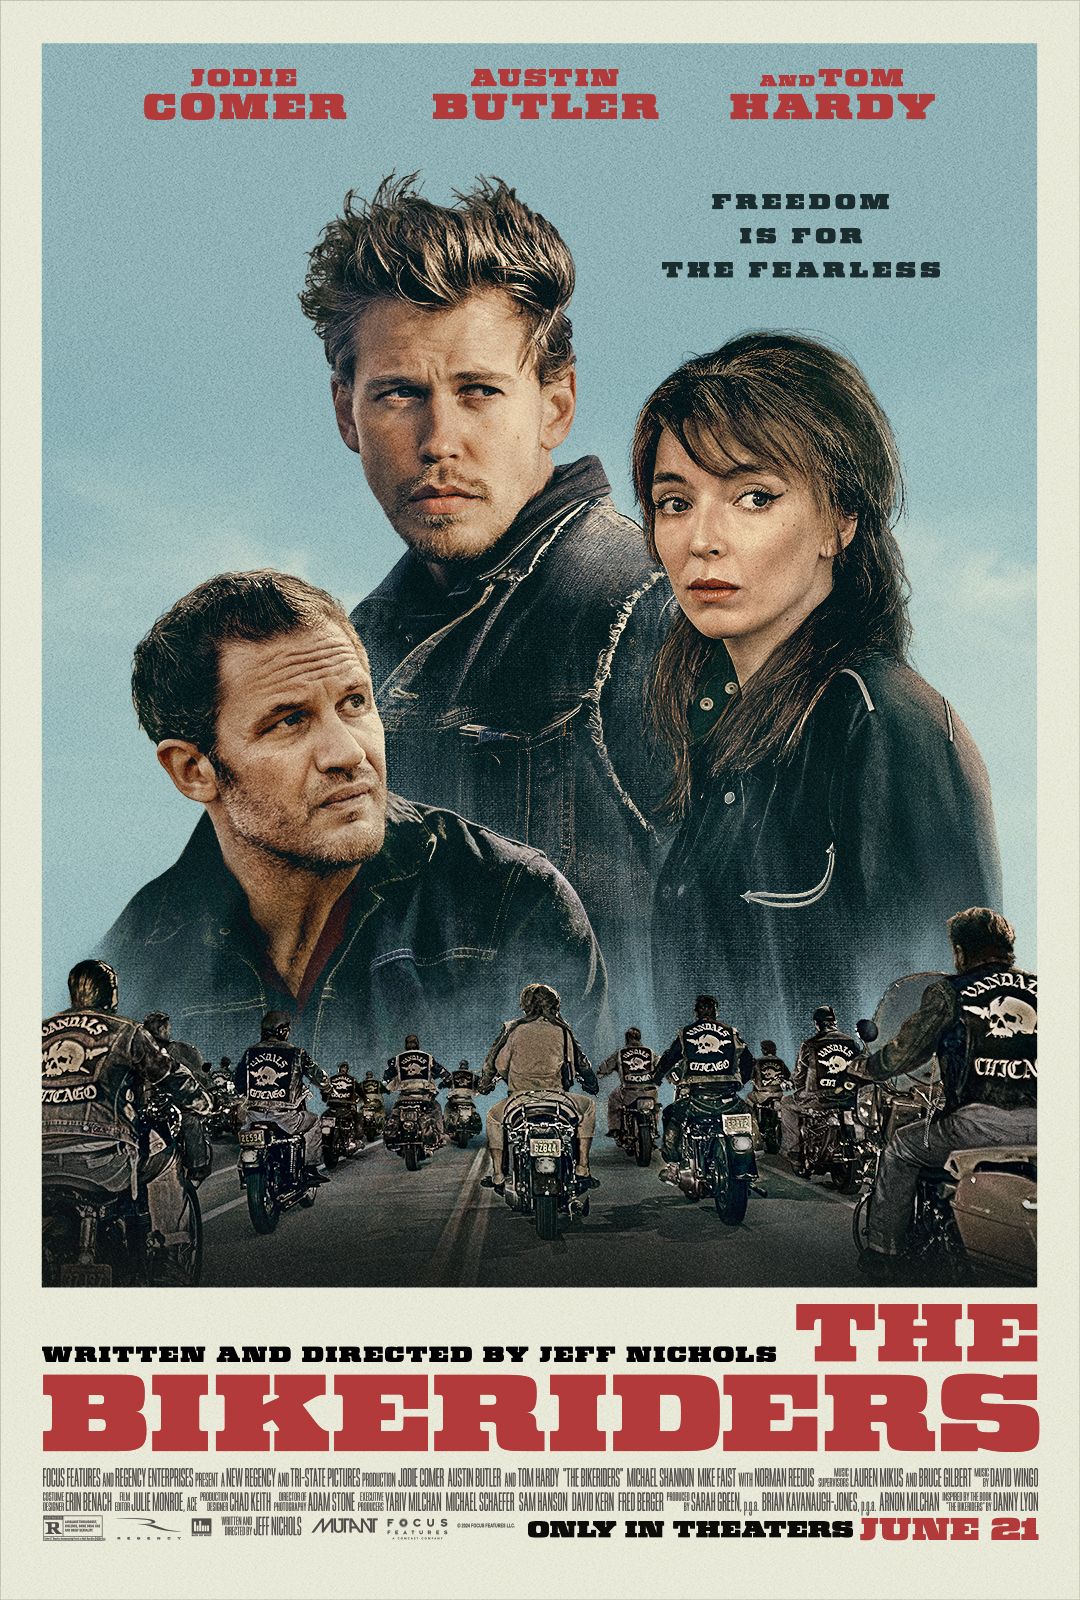 Cartaz do filme Bike Riders mostrando Jodie Comer, Austin Butler e Tom Hardy com uma gangue de motociclistas